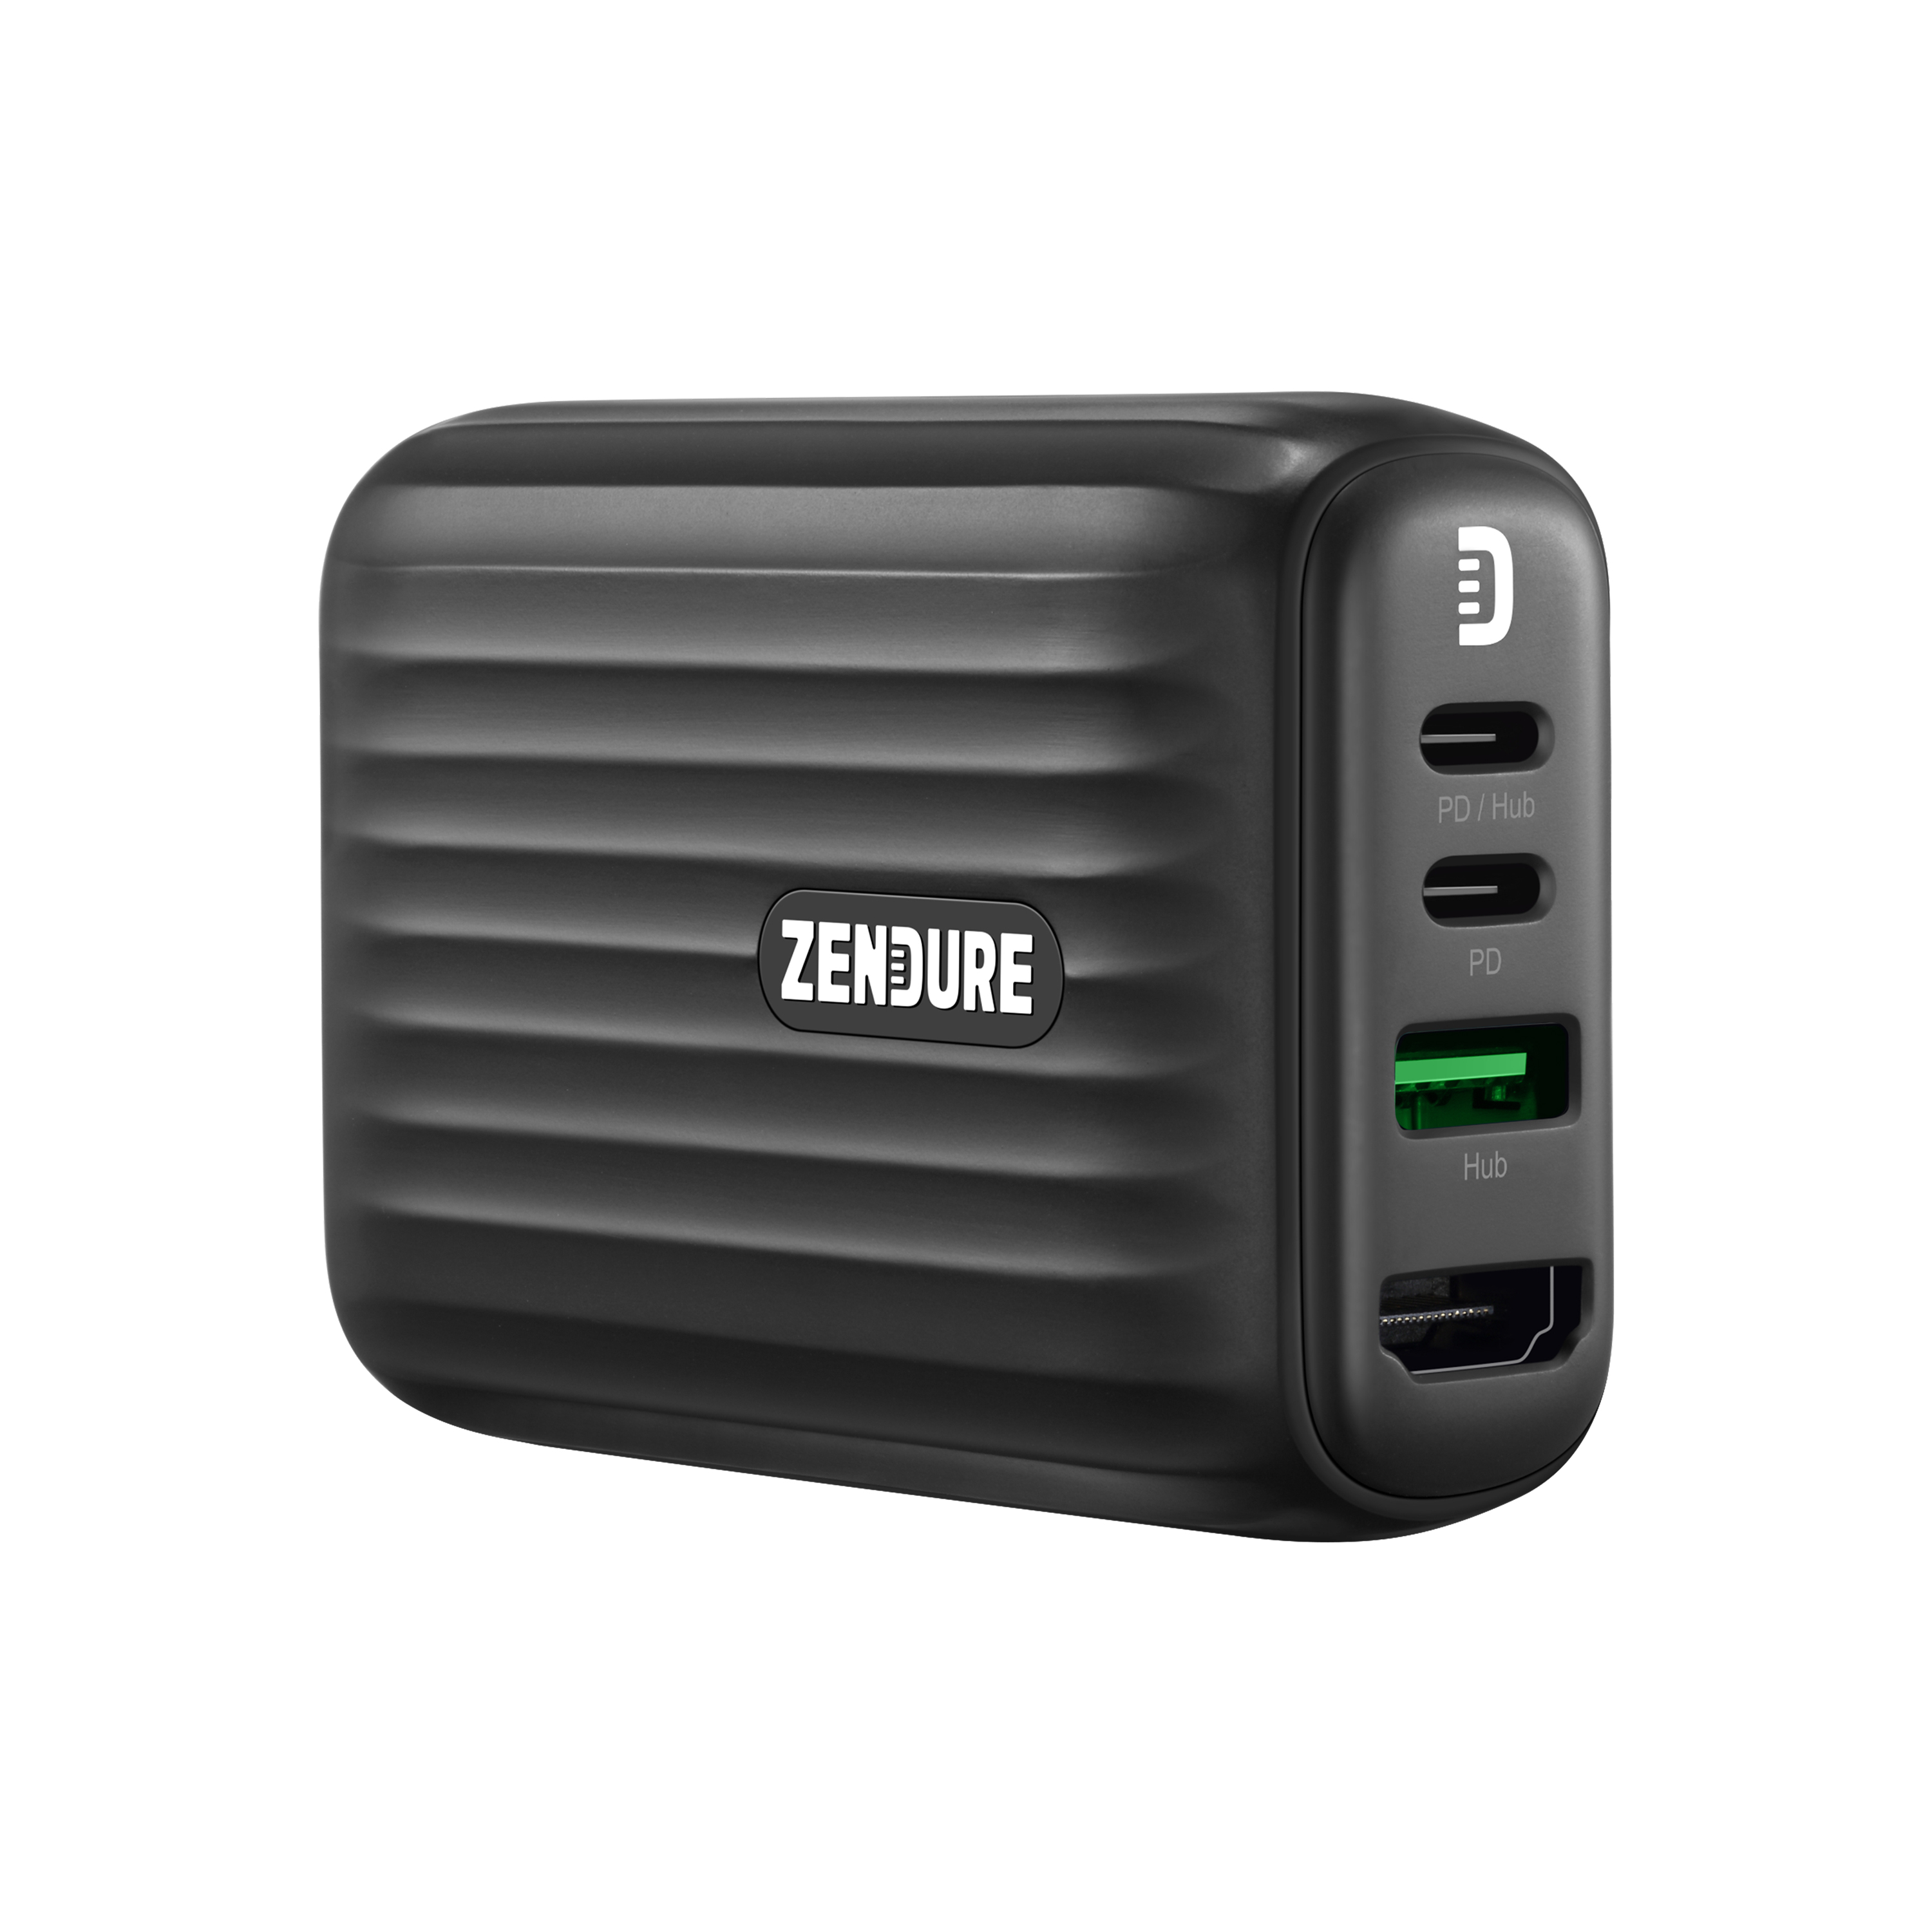 【新製品/ZENDURE】高速充電ACアダプタ、HDMIアダプタ、USBハブ、究極のオールインワン『SuperHub SE』 国内販売開始